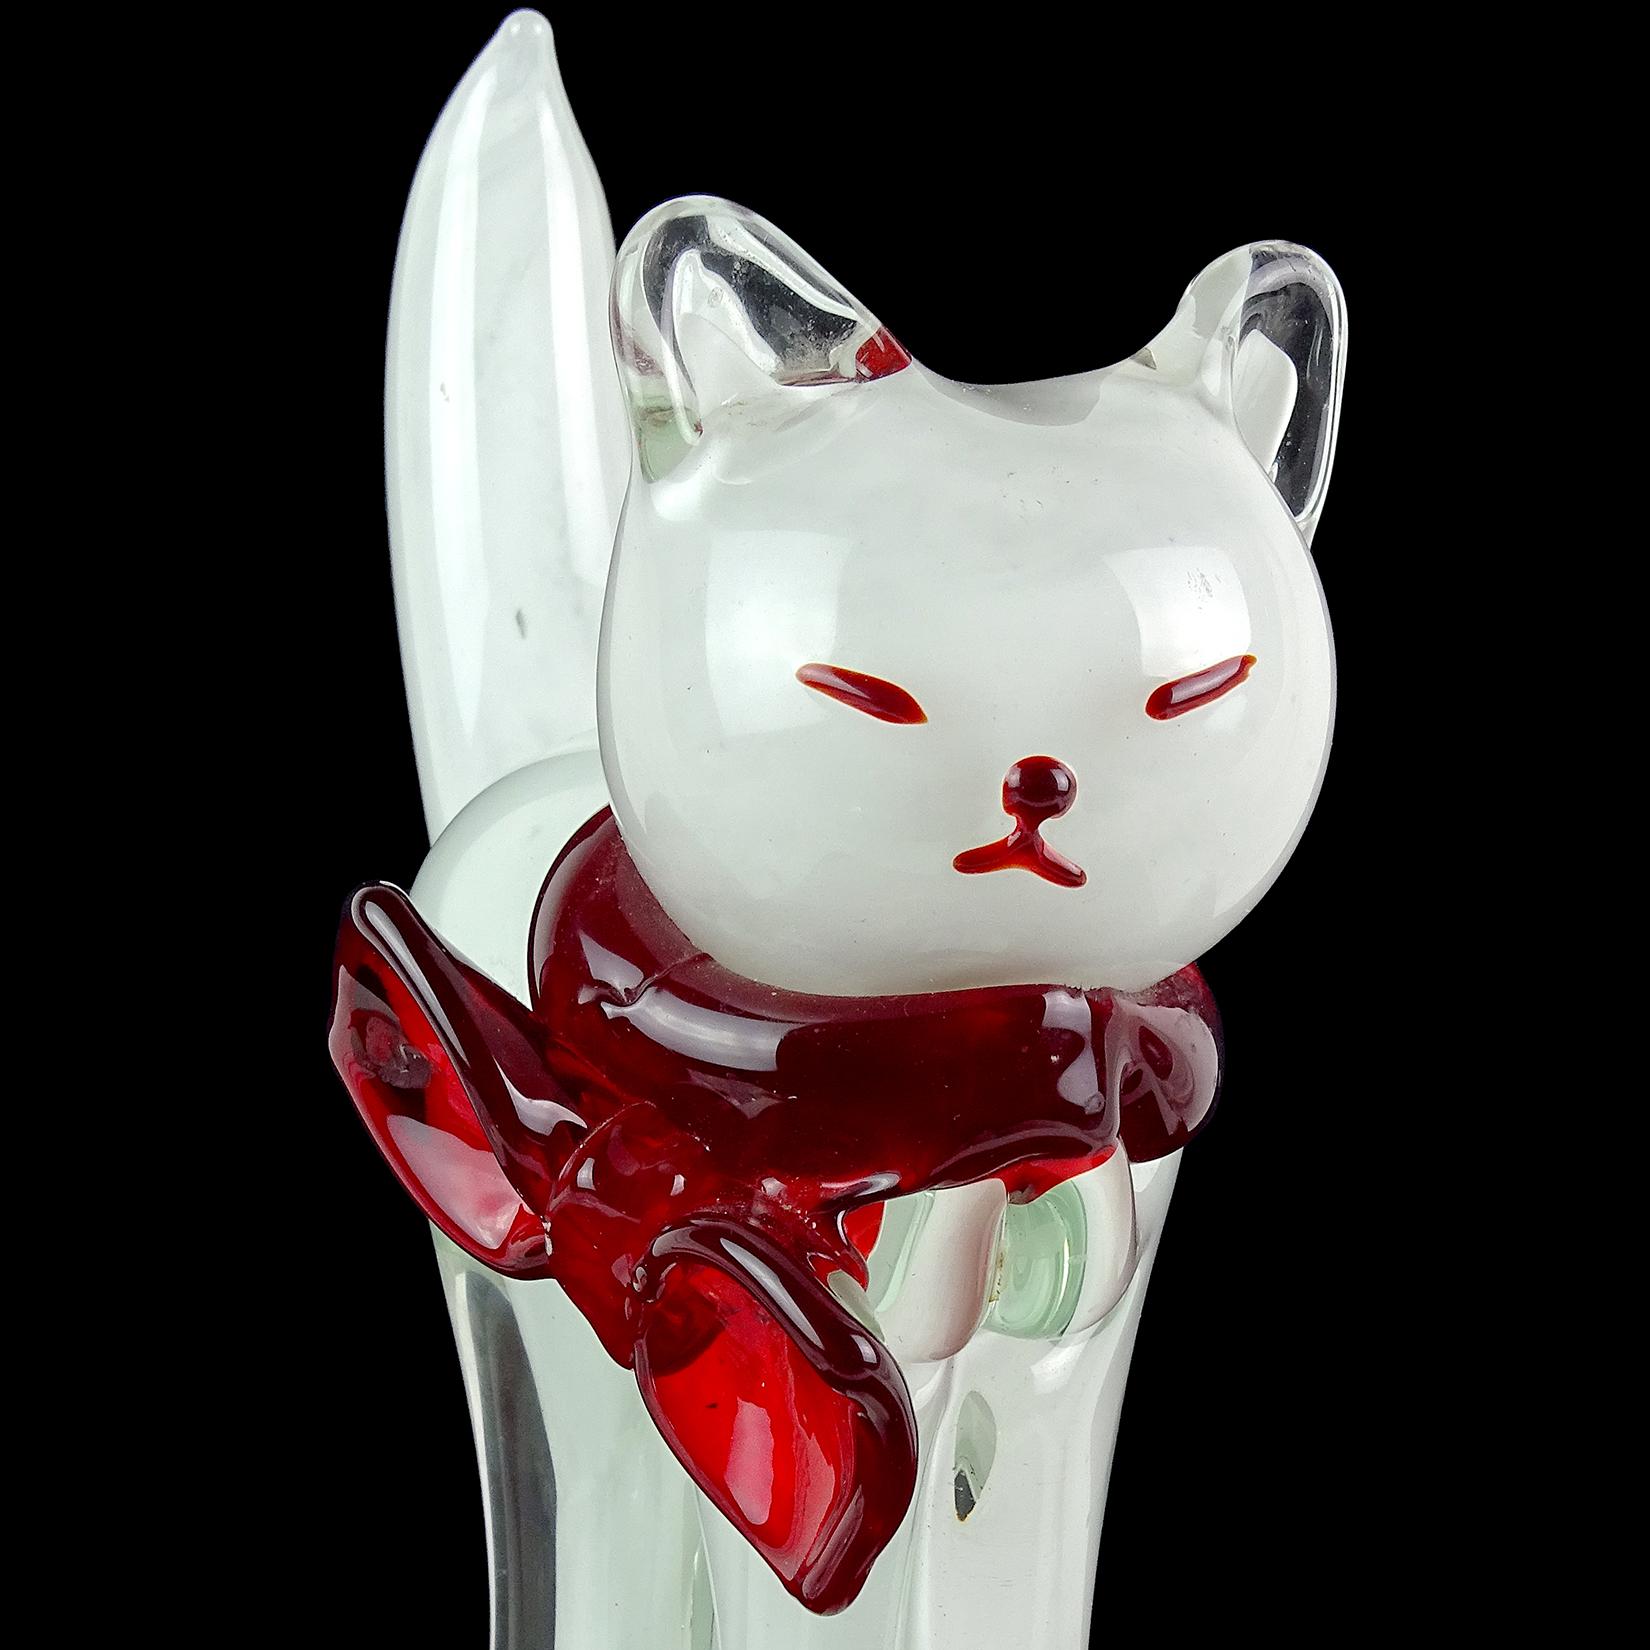 Magnifique et très grande sculpture vintage de chat en verre soufflé à la main de Murano, en verre transparent et blanc. Il a des accents rouges pour son joli visage, et un grand nœud rouge sur son cou. Le chat repose sur une grande base en verre